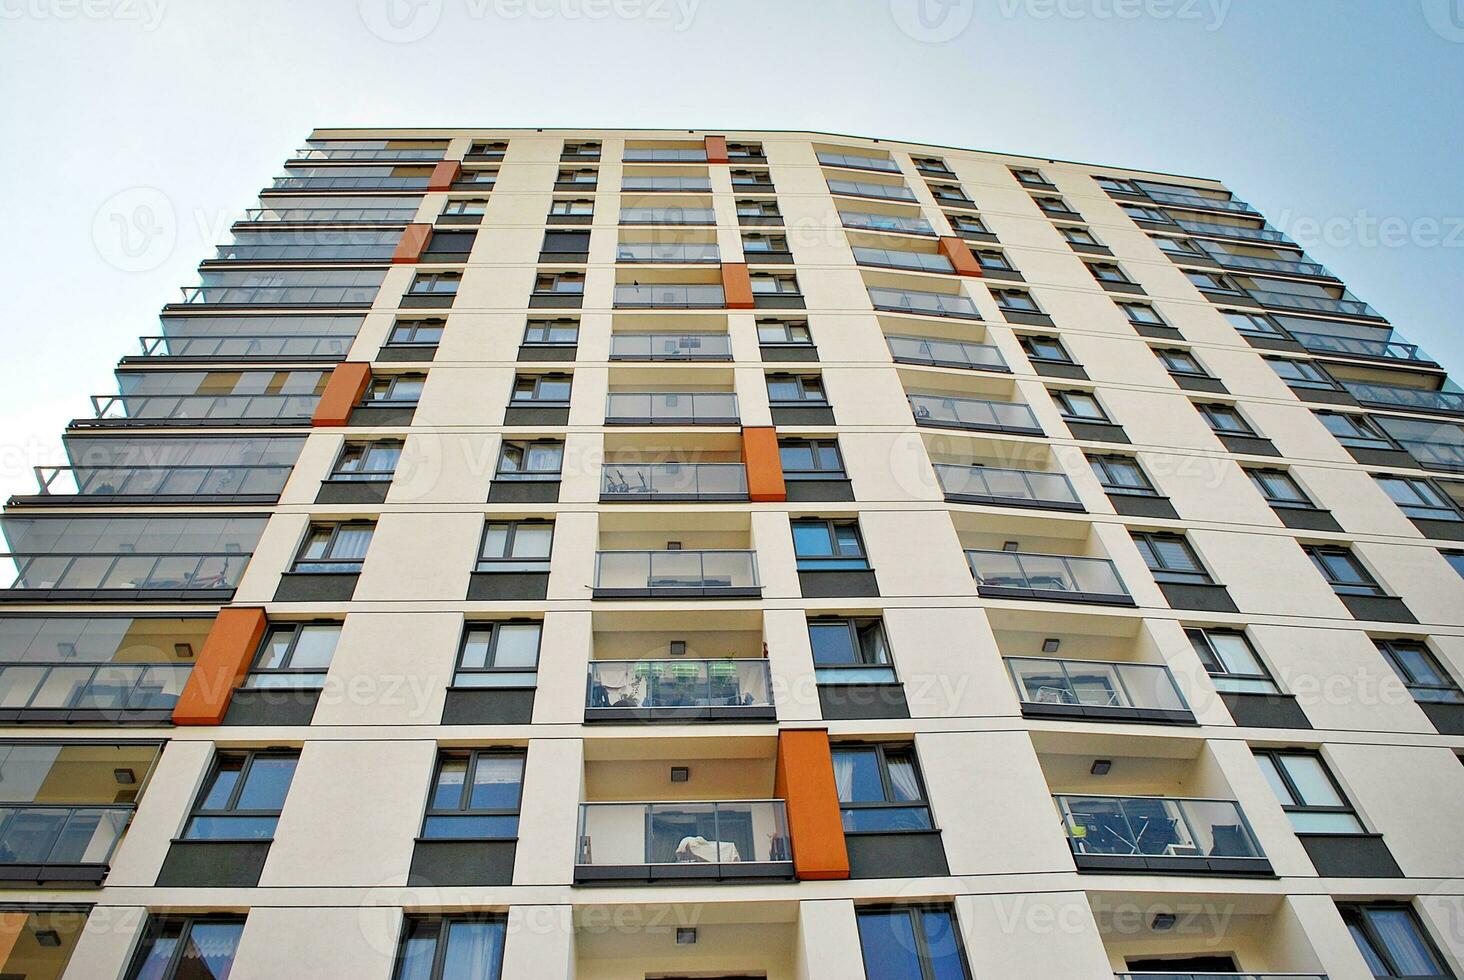 marca nuovo appartamento edificio su soleggiato giorno. moderno Residenziale architettura. moderno plurifamiliare appartamento Casa. foto